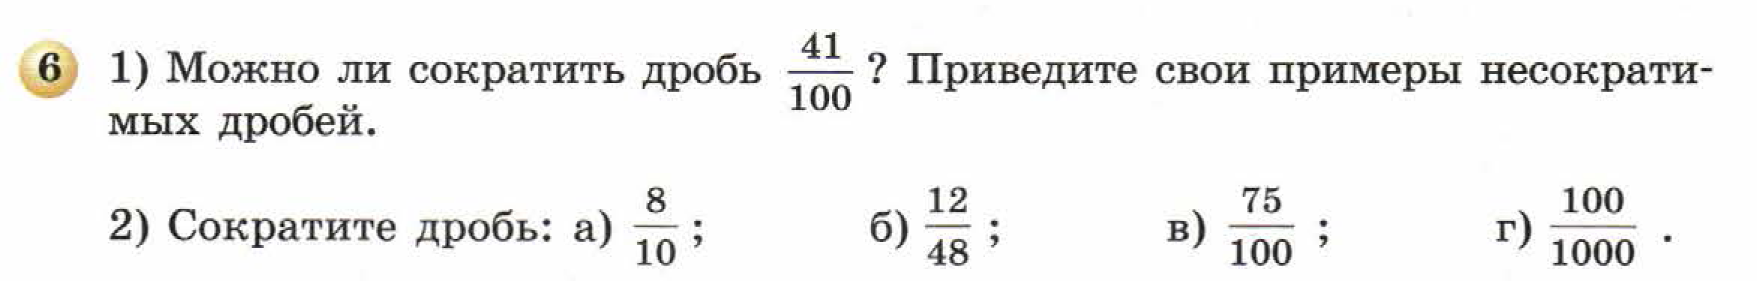 решебник по математике Бунимович 5 класс условие итоги главы 8 задание 6